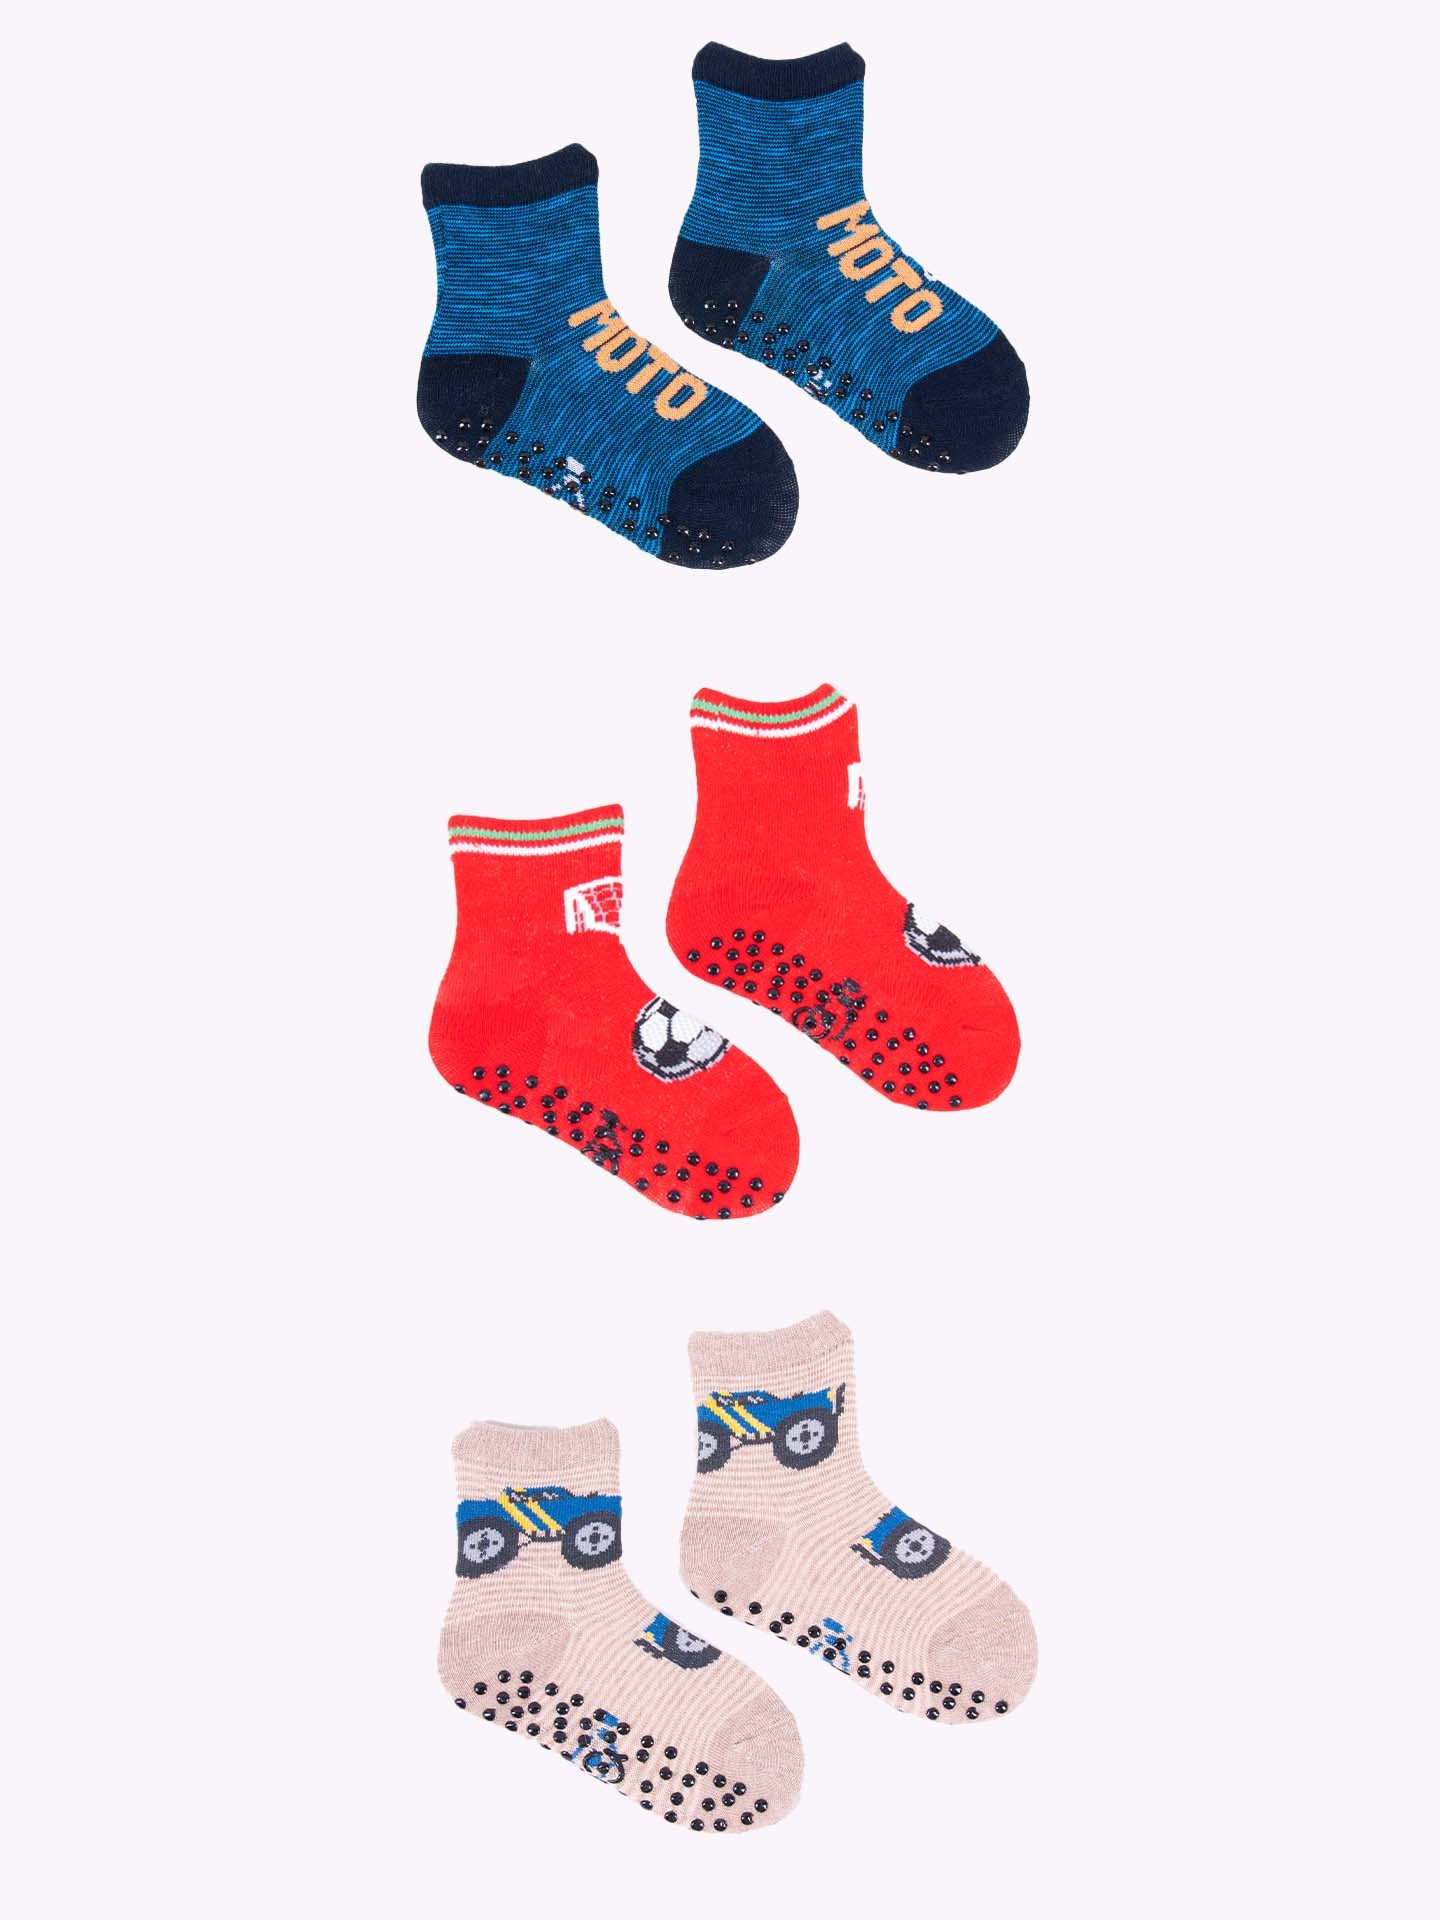 Yoclub Chlapecké bavlněné ponožky proti uklouznutí s ABS vzorem Barvy 3-pack SKA-0109C-AA3A-003 Vícebarevné 17-19